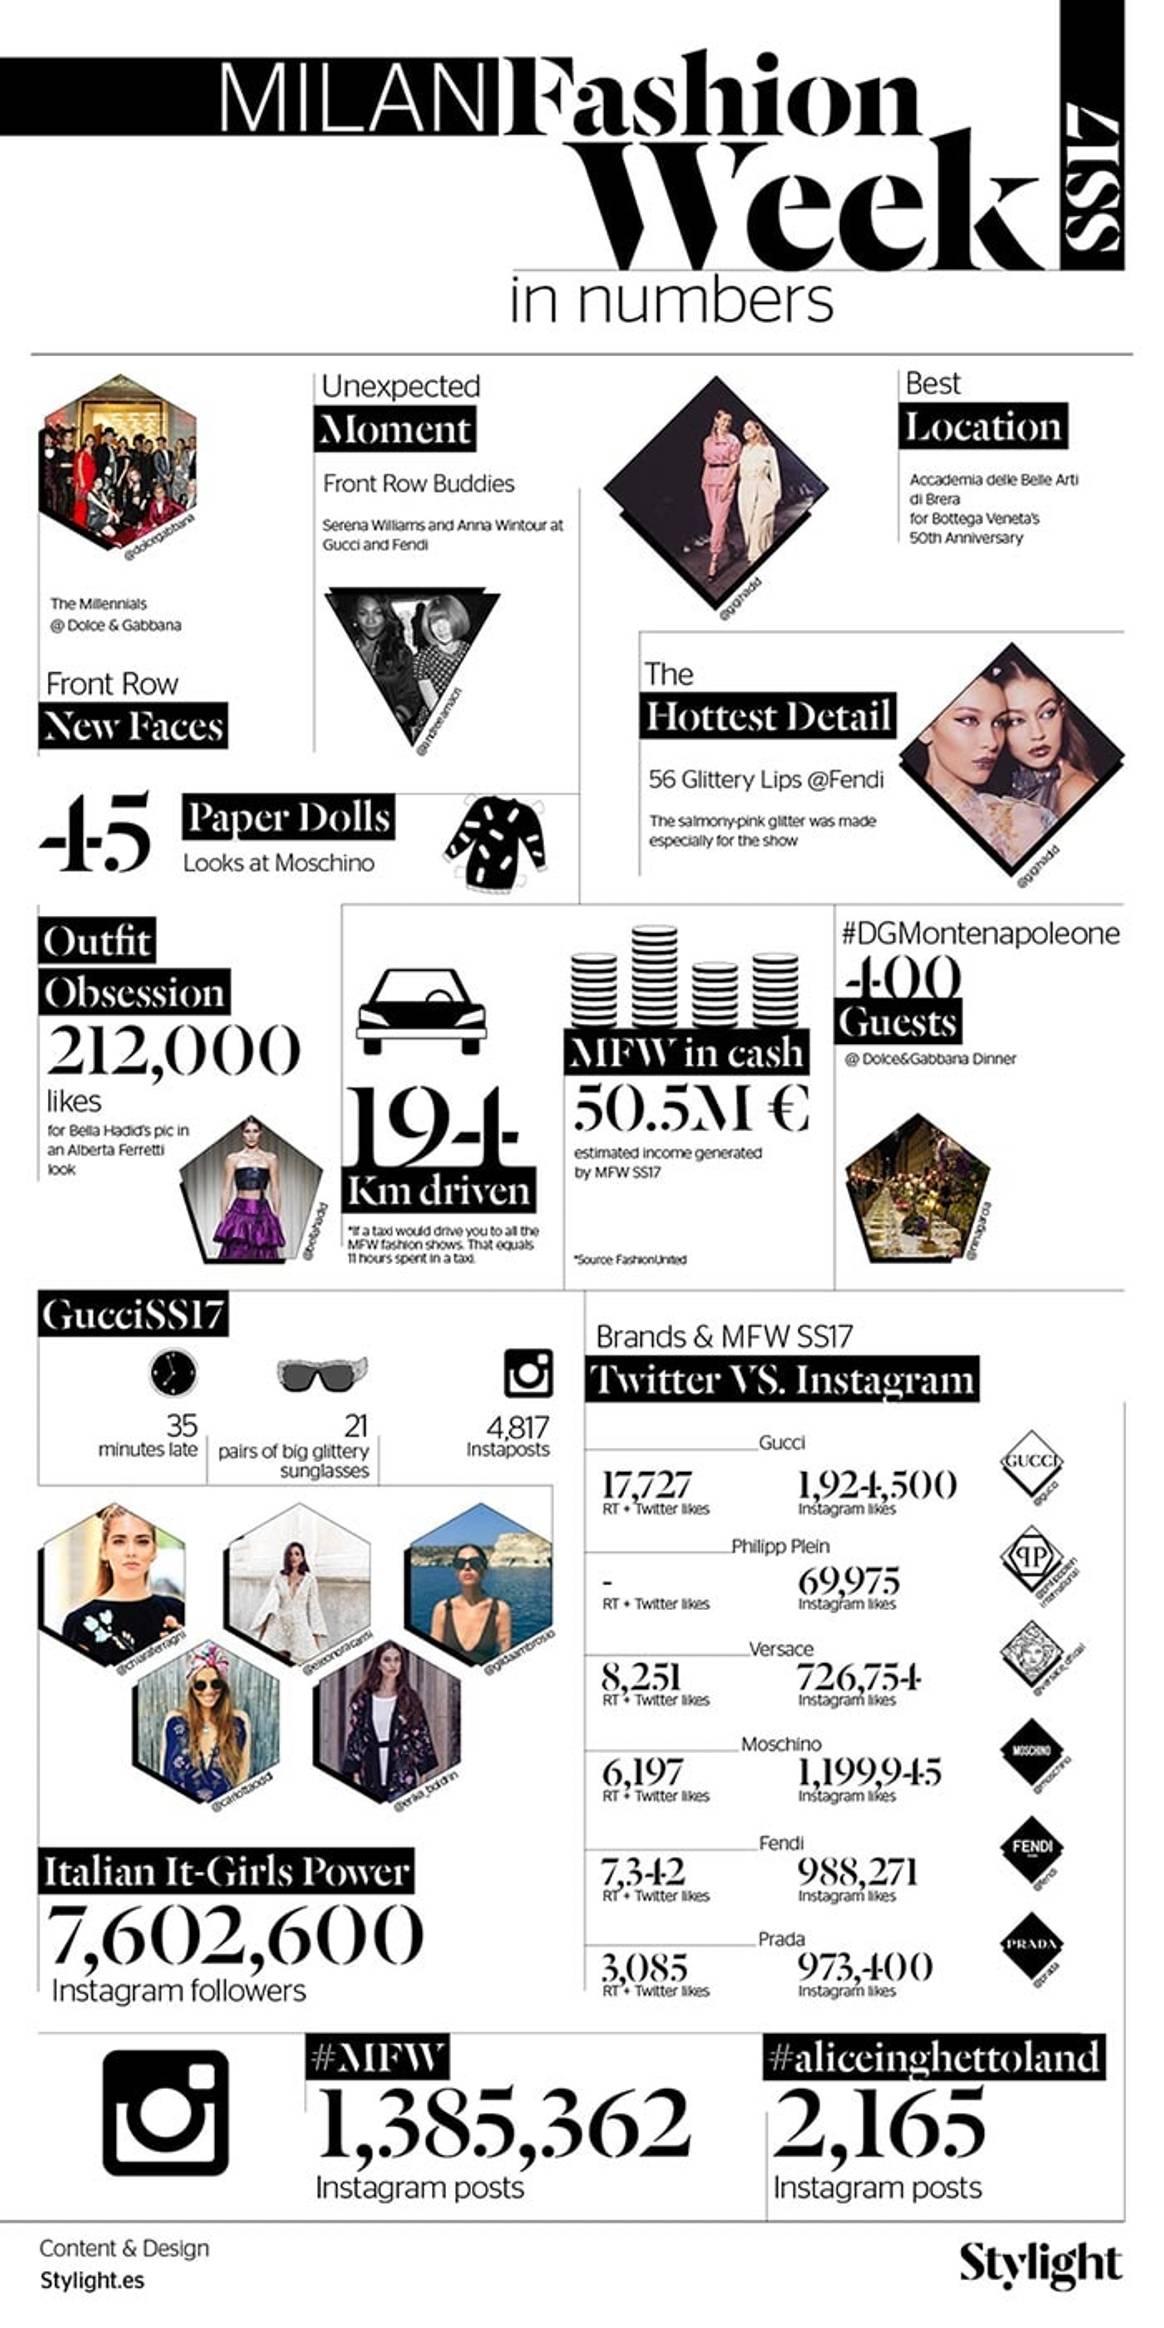 La Semana de la Moda de Milán en números: Lo más relevante